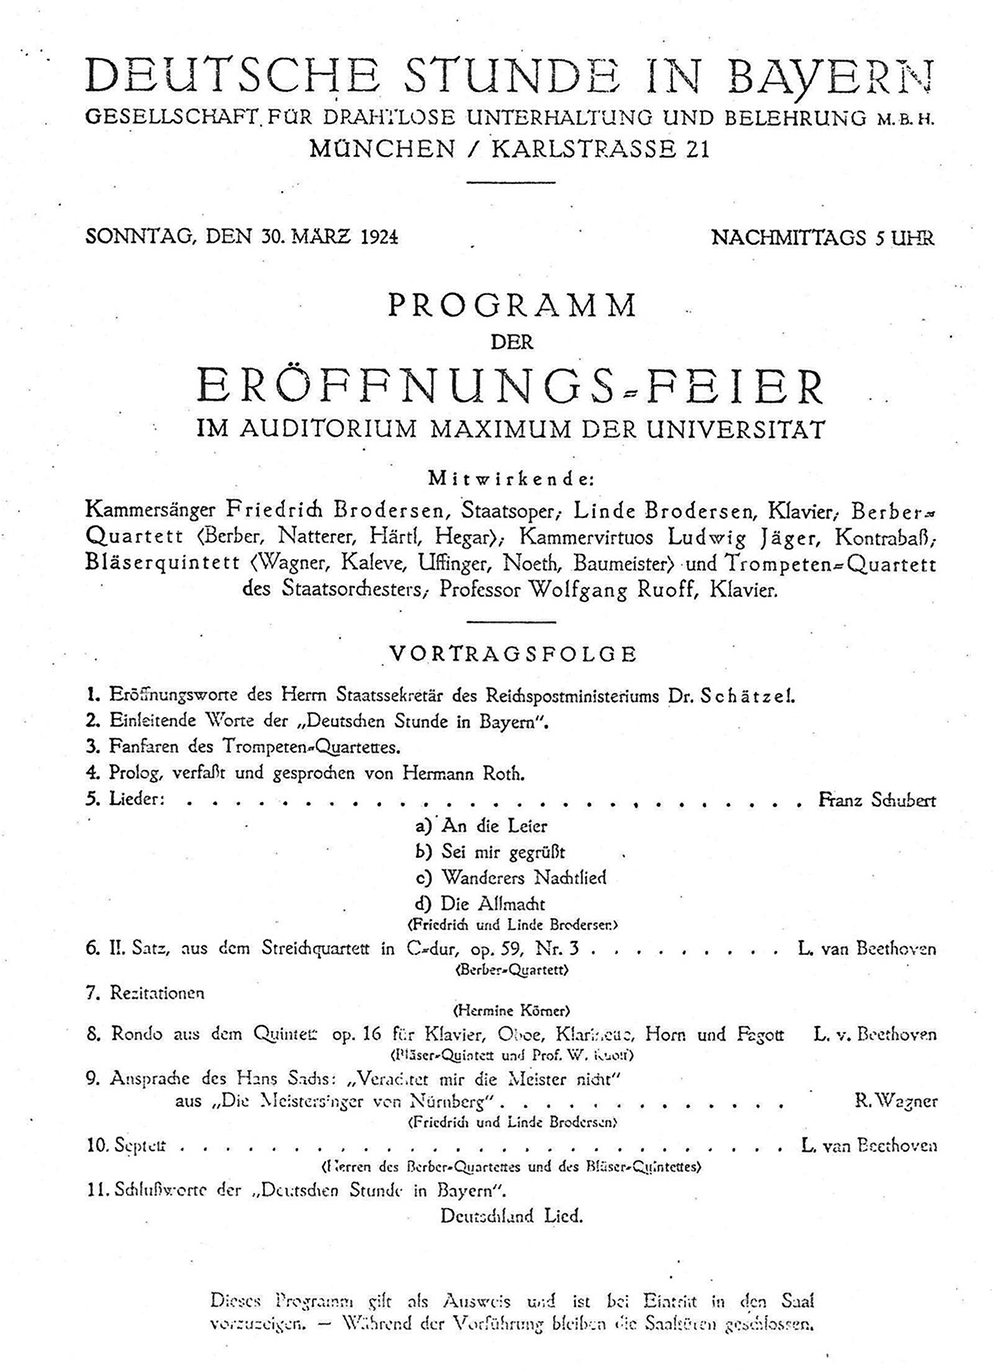 Programm der Eröffnungsfeier der Deutschen Stunde in Bayern | Bild: BR / Historisches Archiv